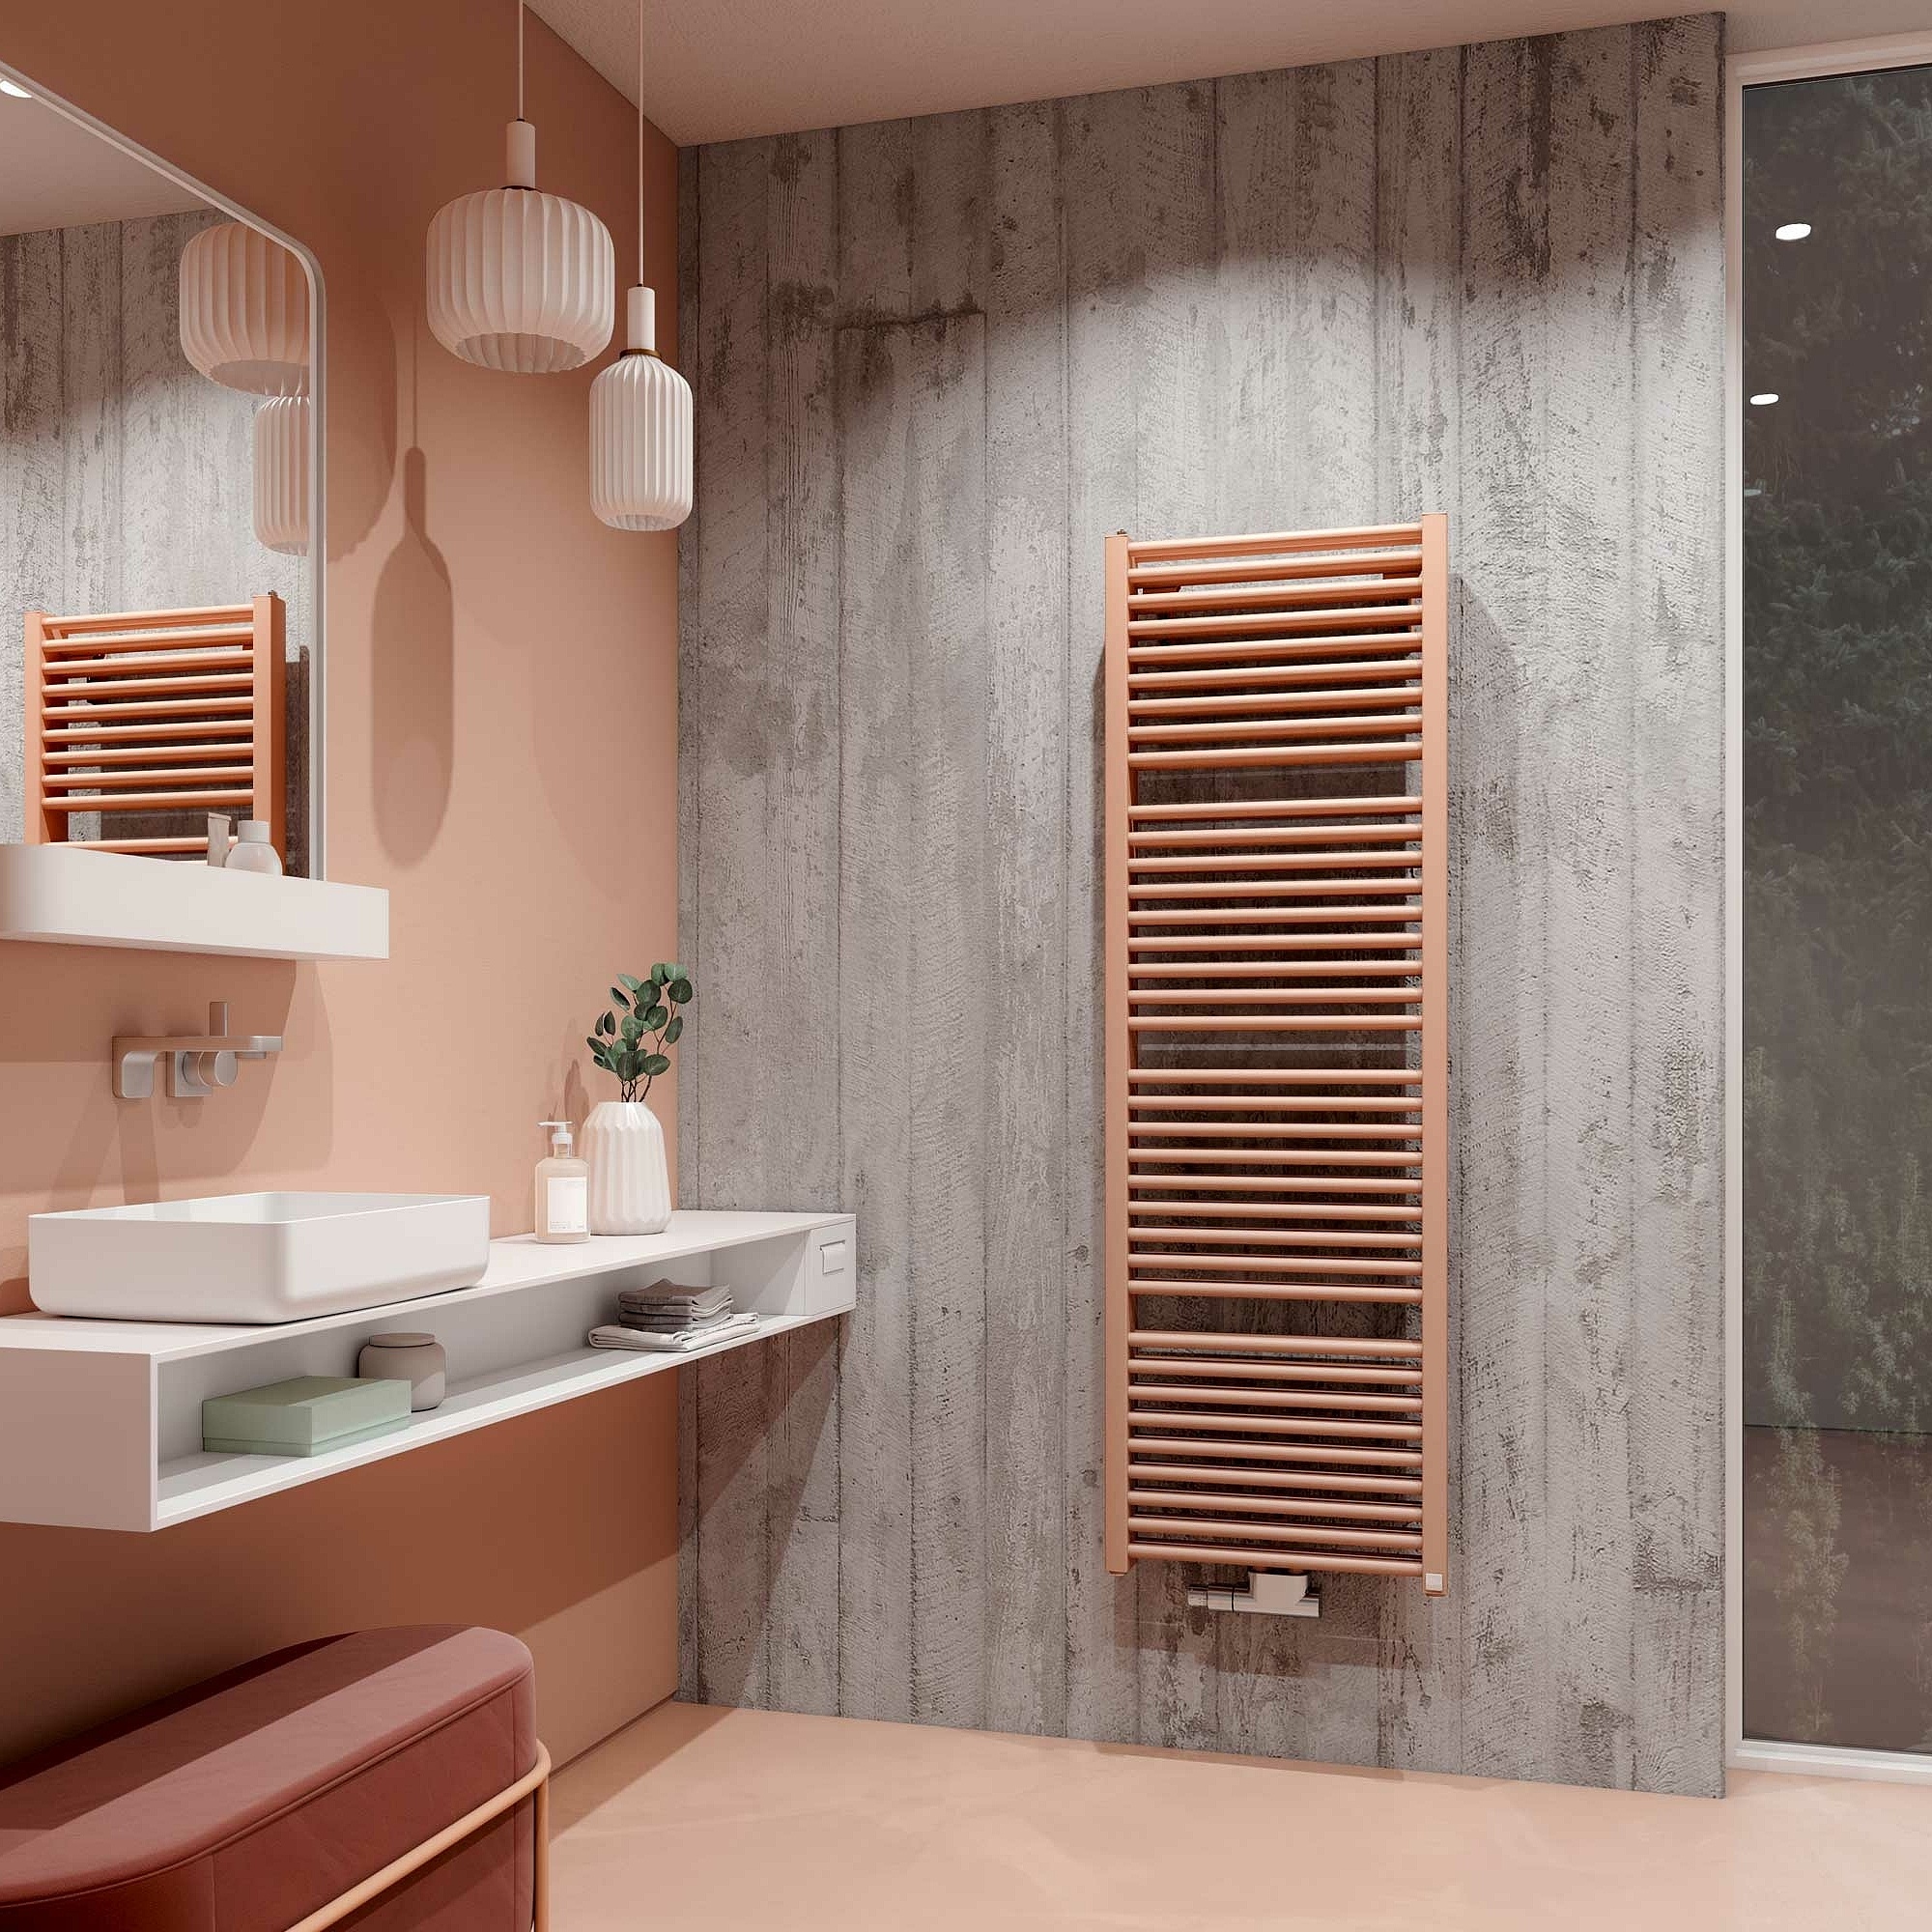 Radiateur design et de salle de bain Duett de Kermi – Design thermique classique pour votre salle de bain, avec double puissance.